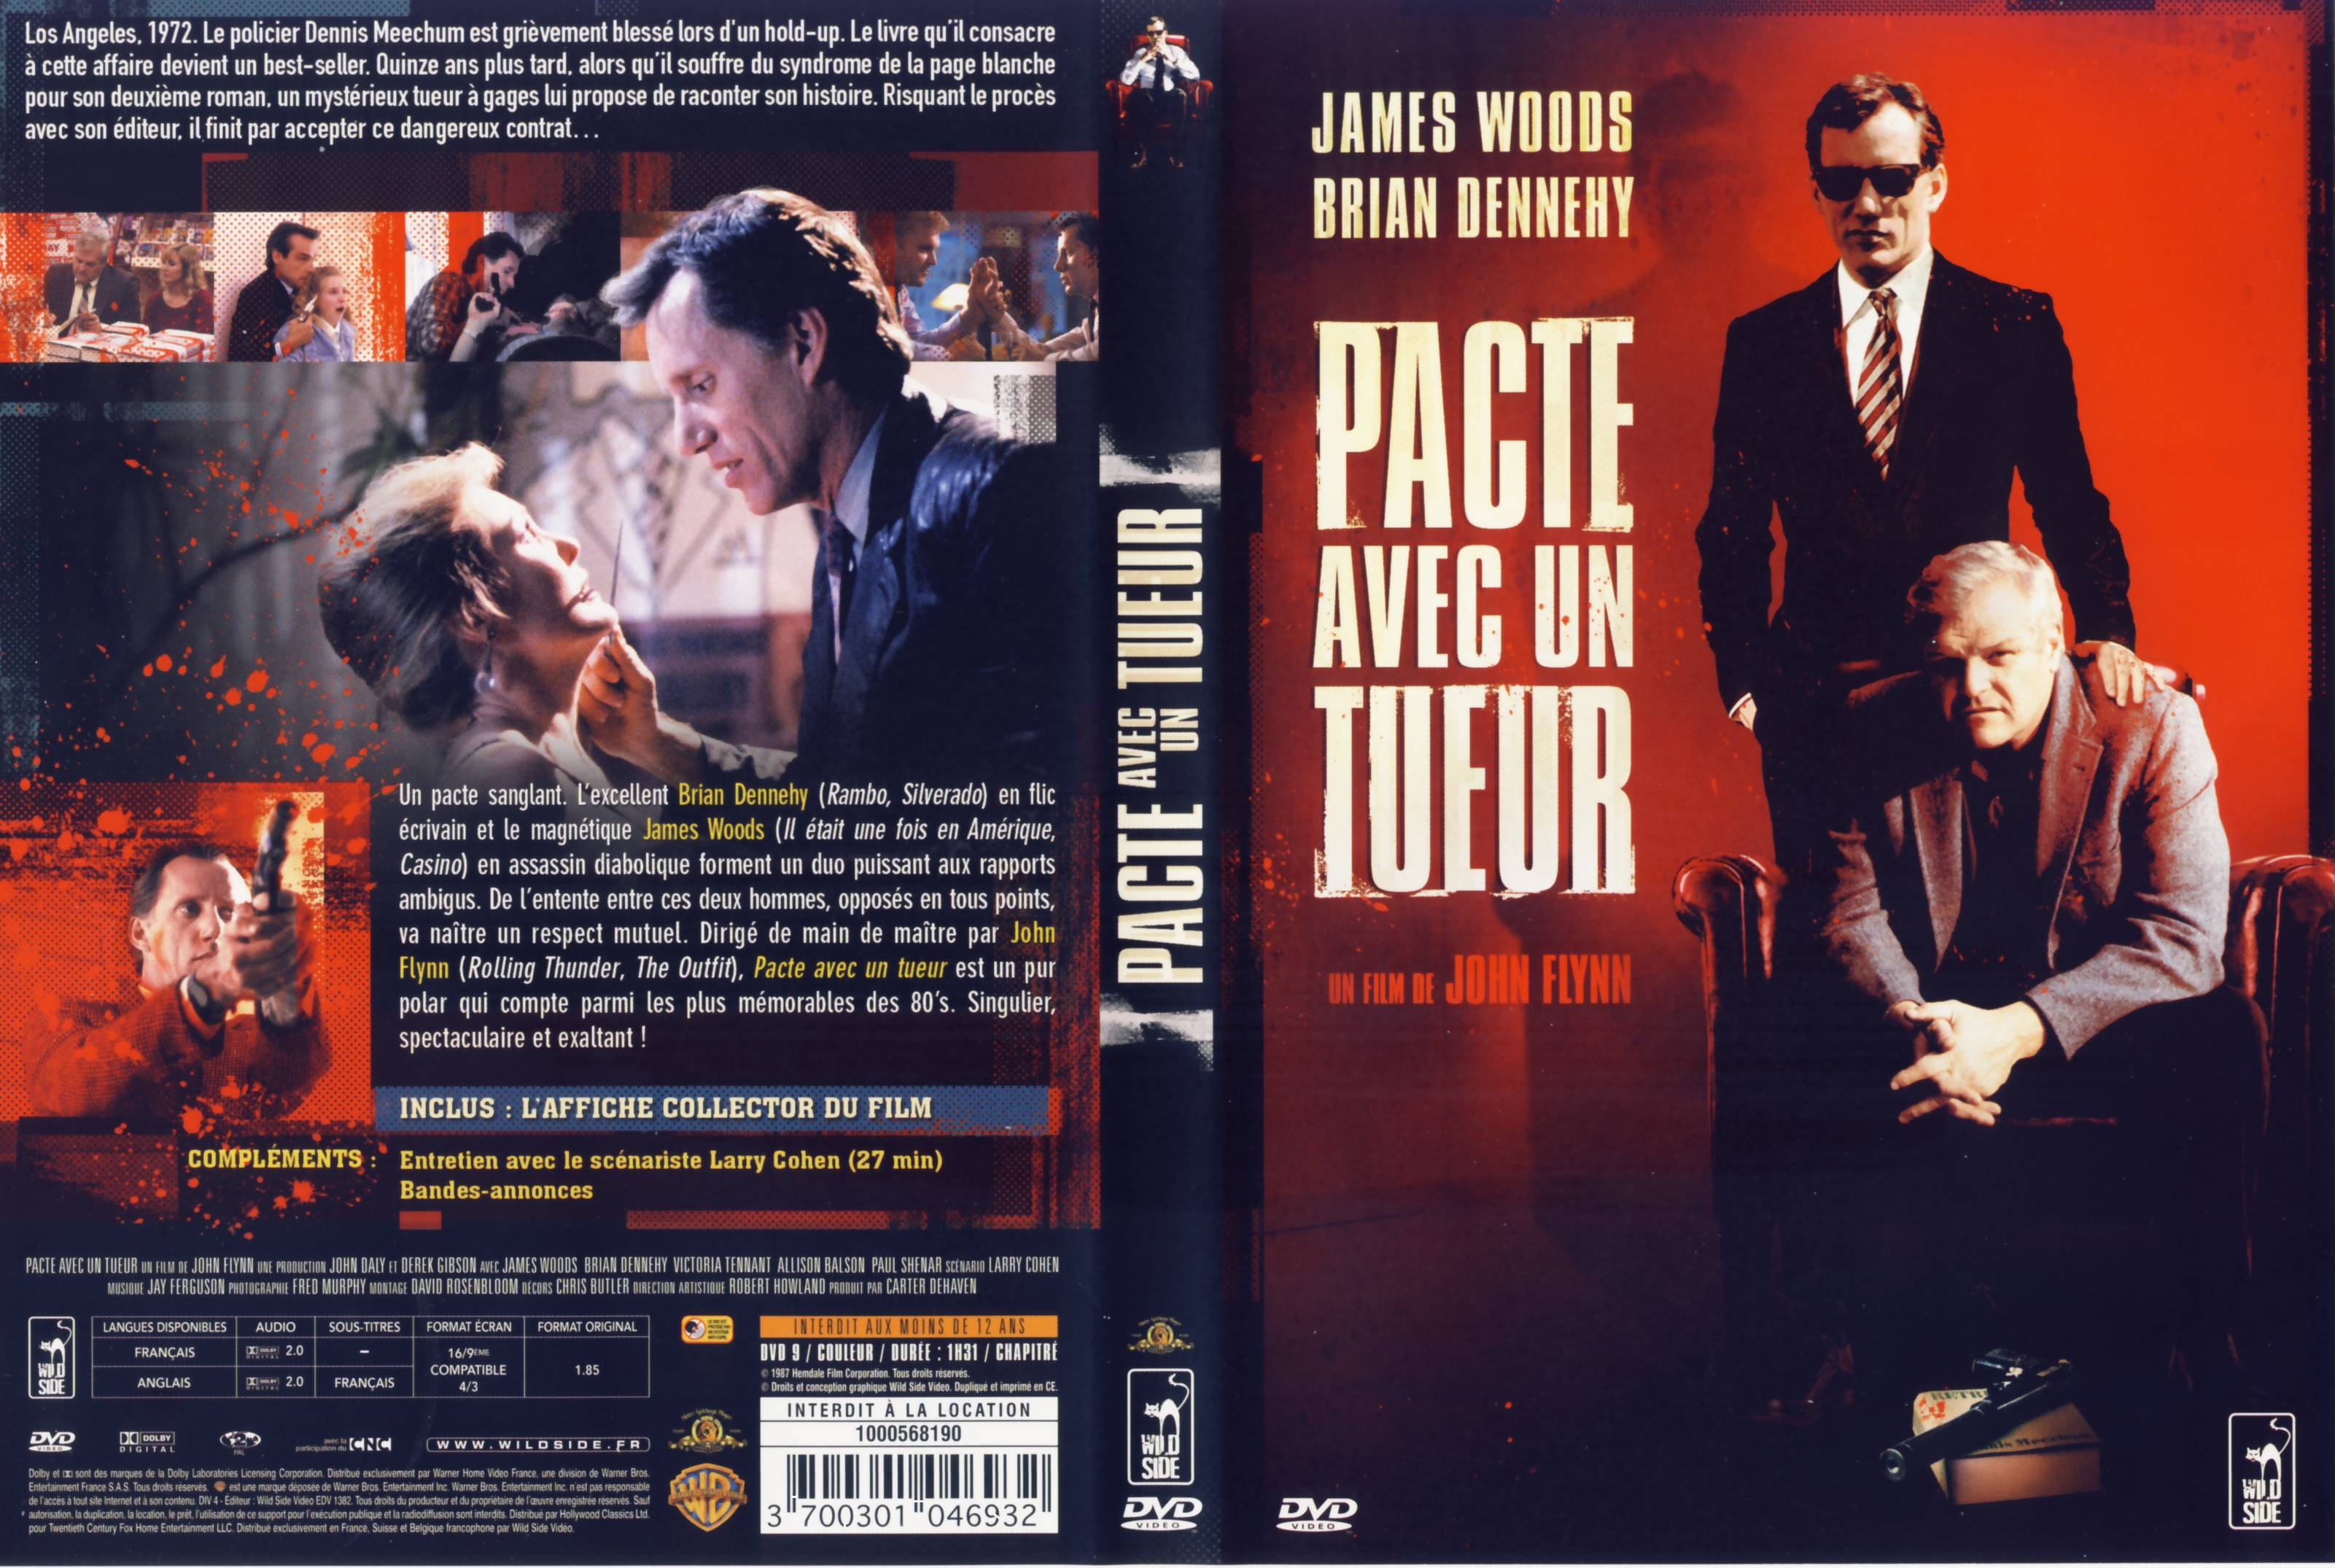 Jaquette DVD Pacte avec un tueur v2